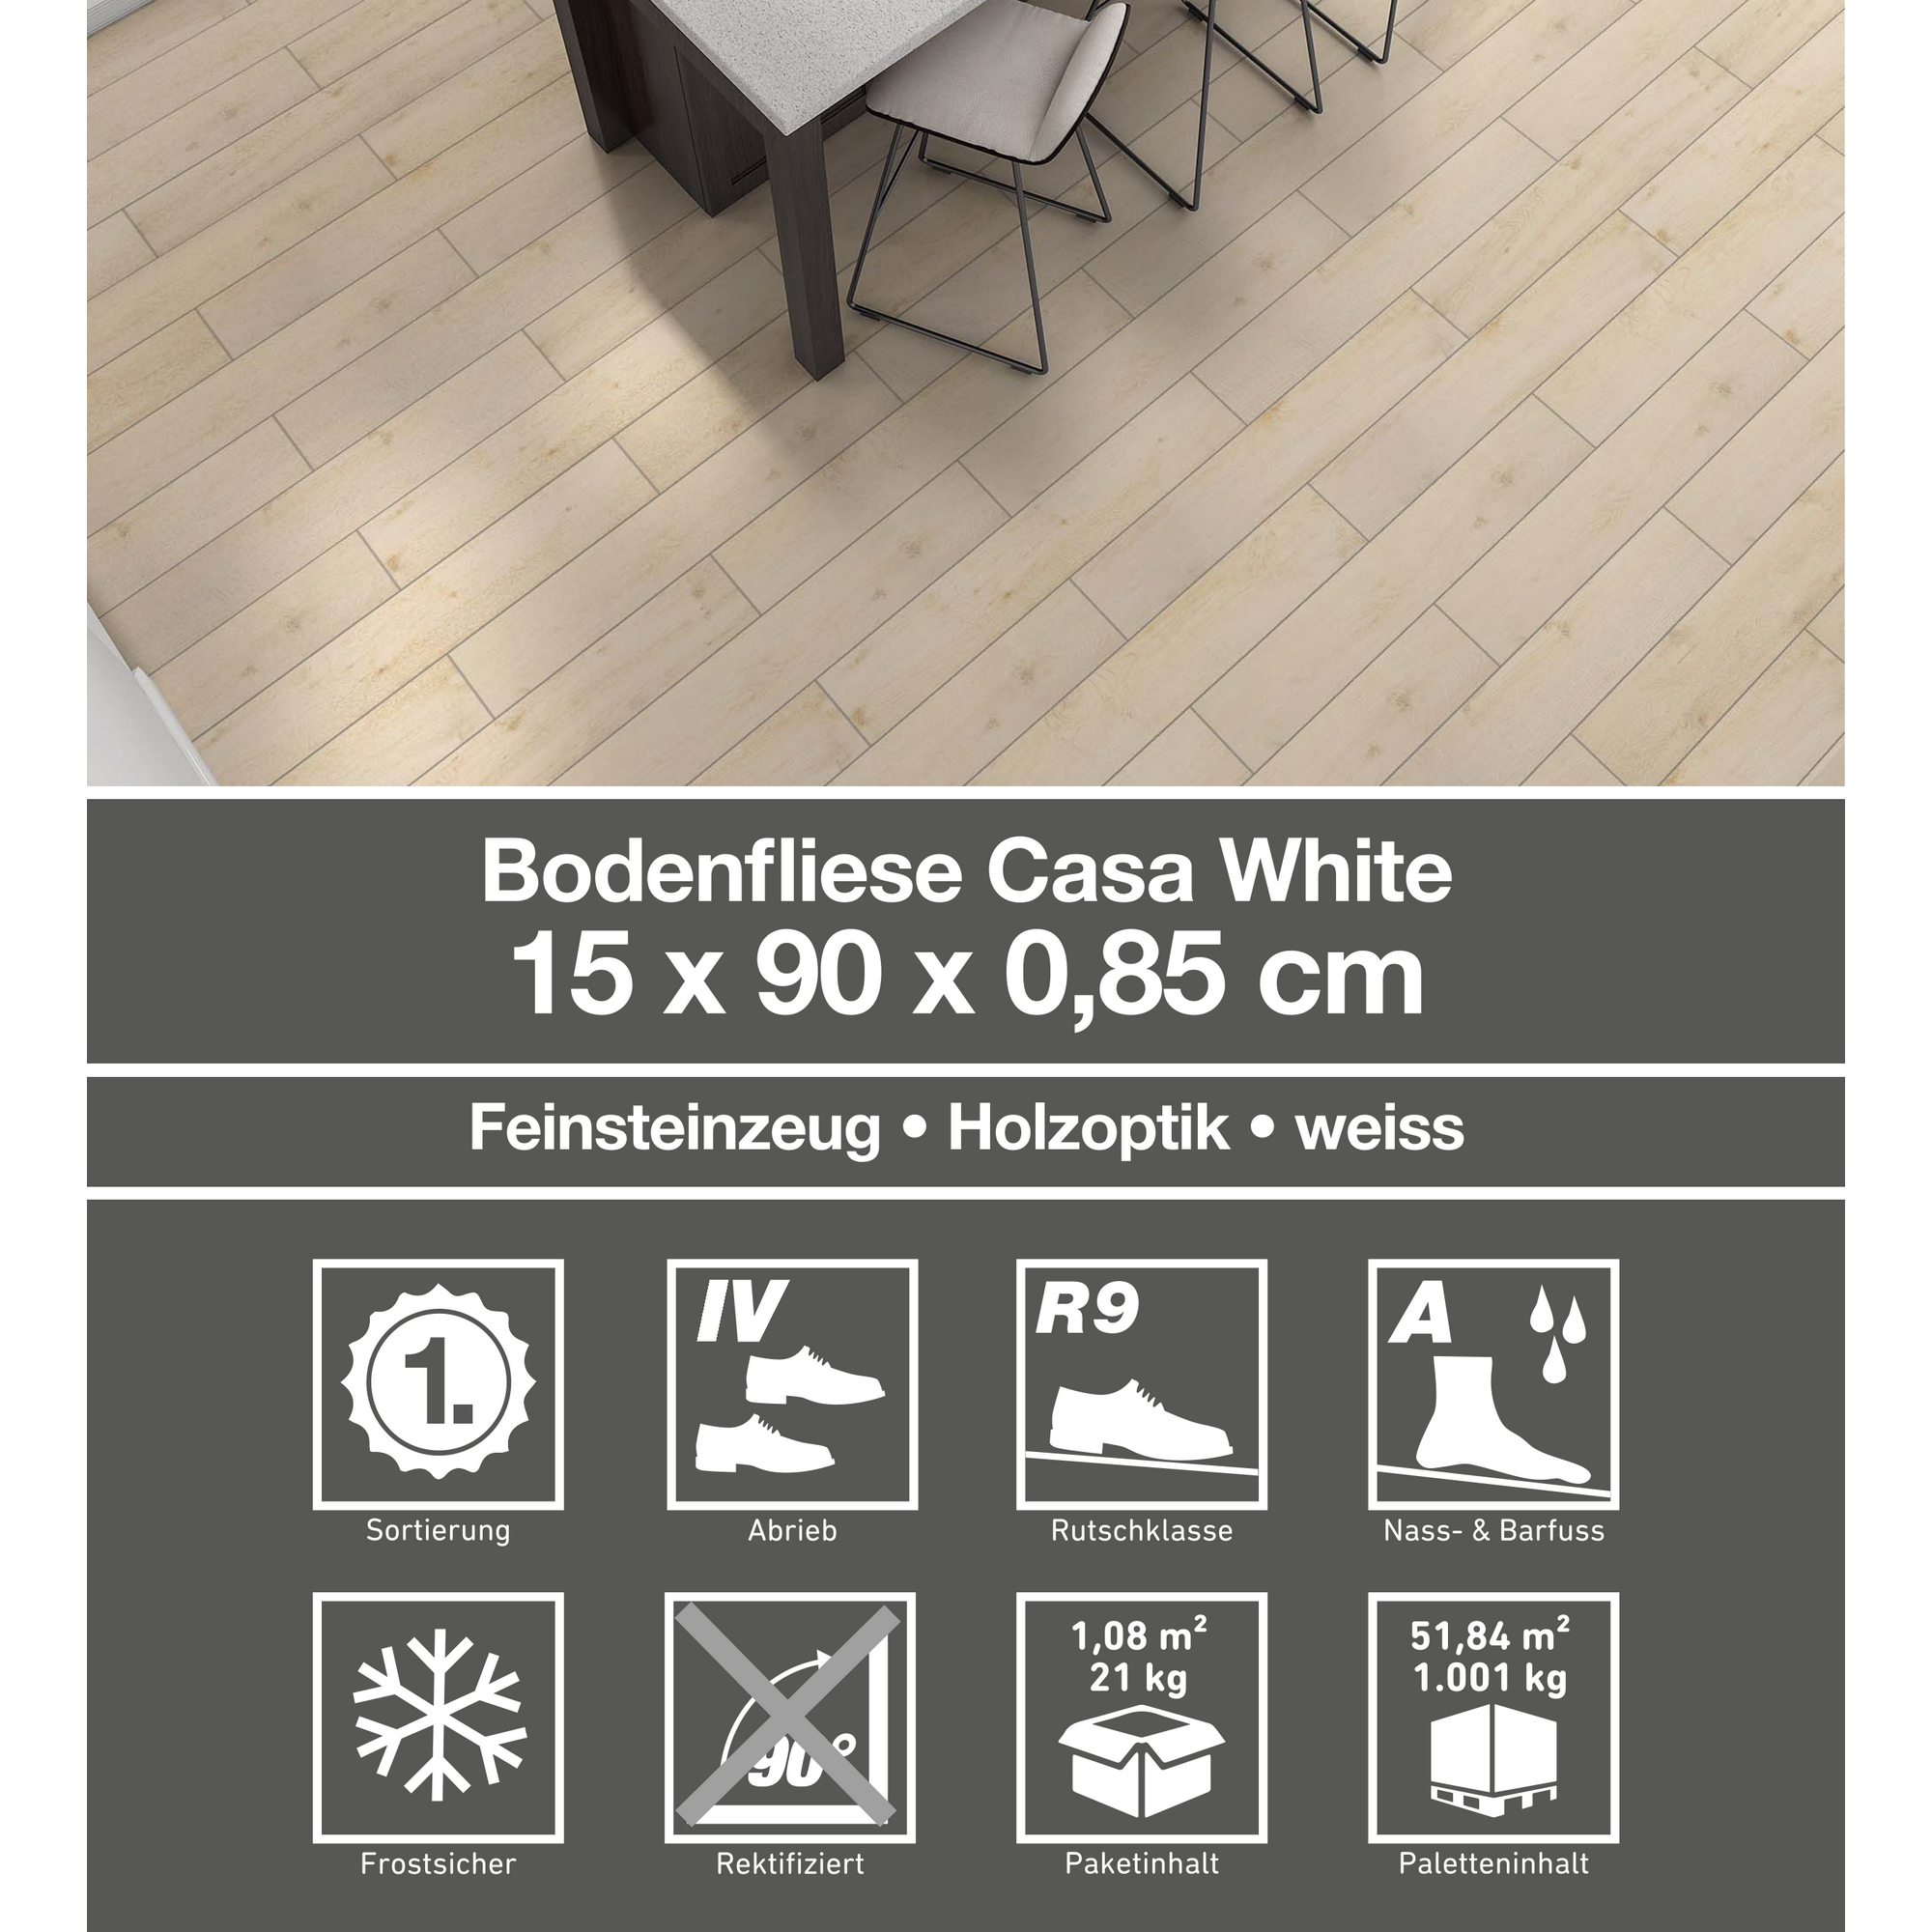 Bodenfliese 'Casa' Feinsteinzeug weiß 15 x 90 cm + product picture